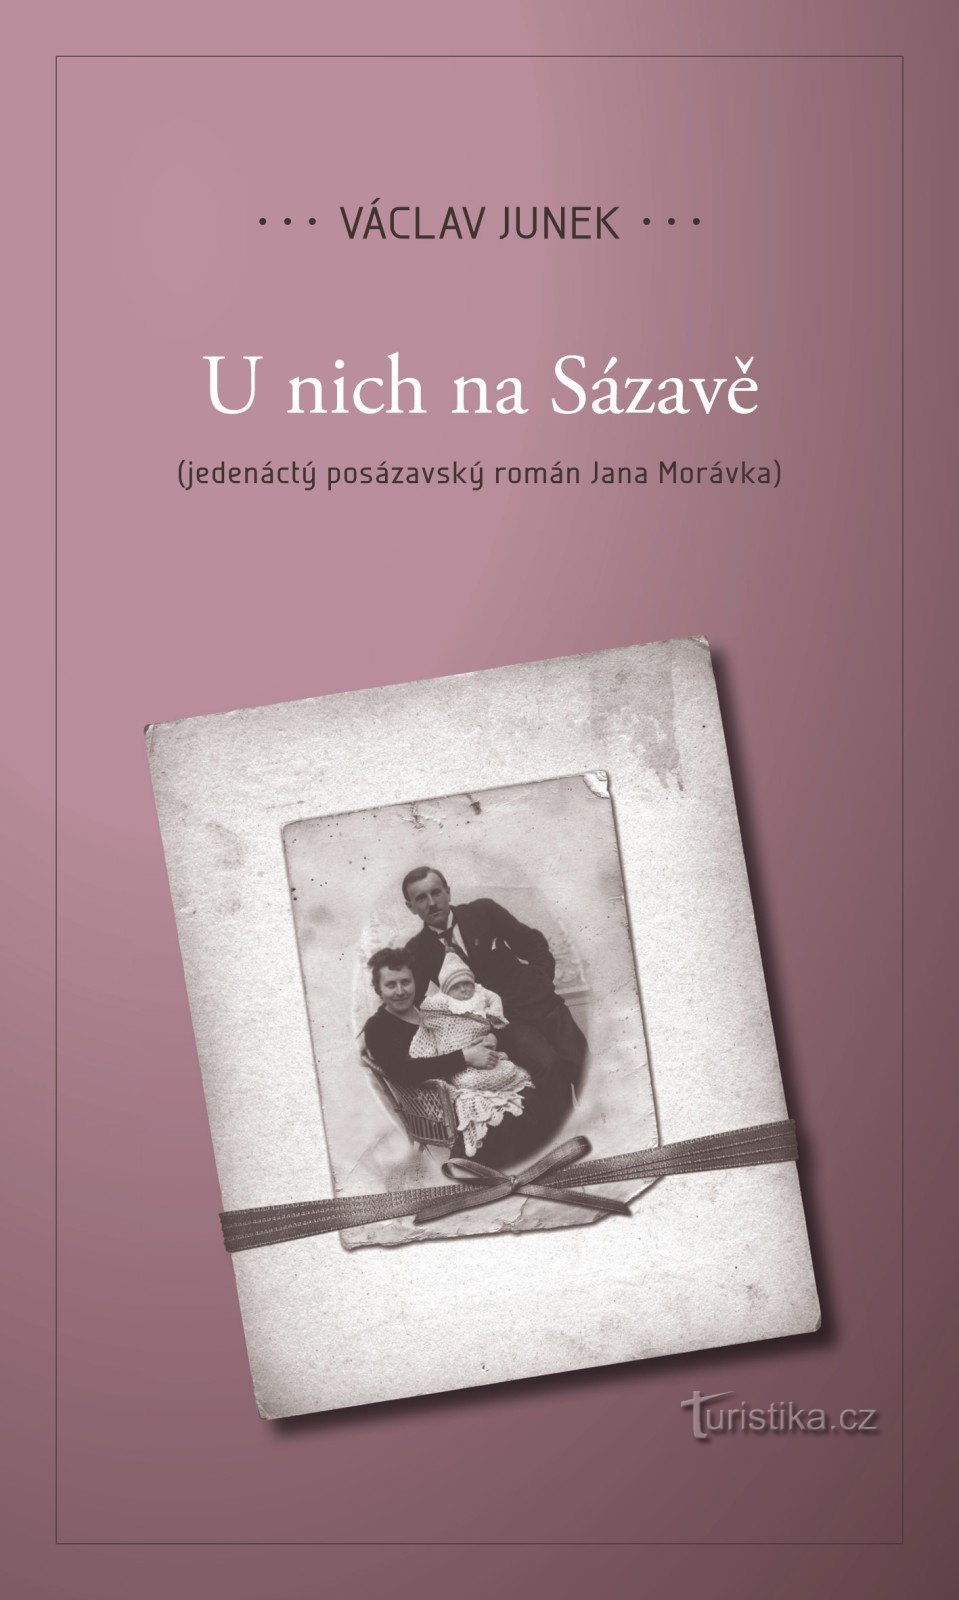 Θα παρουσιάσουμε το ενδέκατο μυθιστόρημα U nich Na Sázavá του Václav Junka